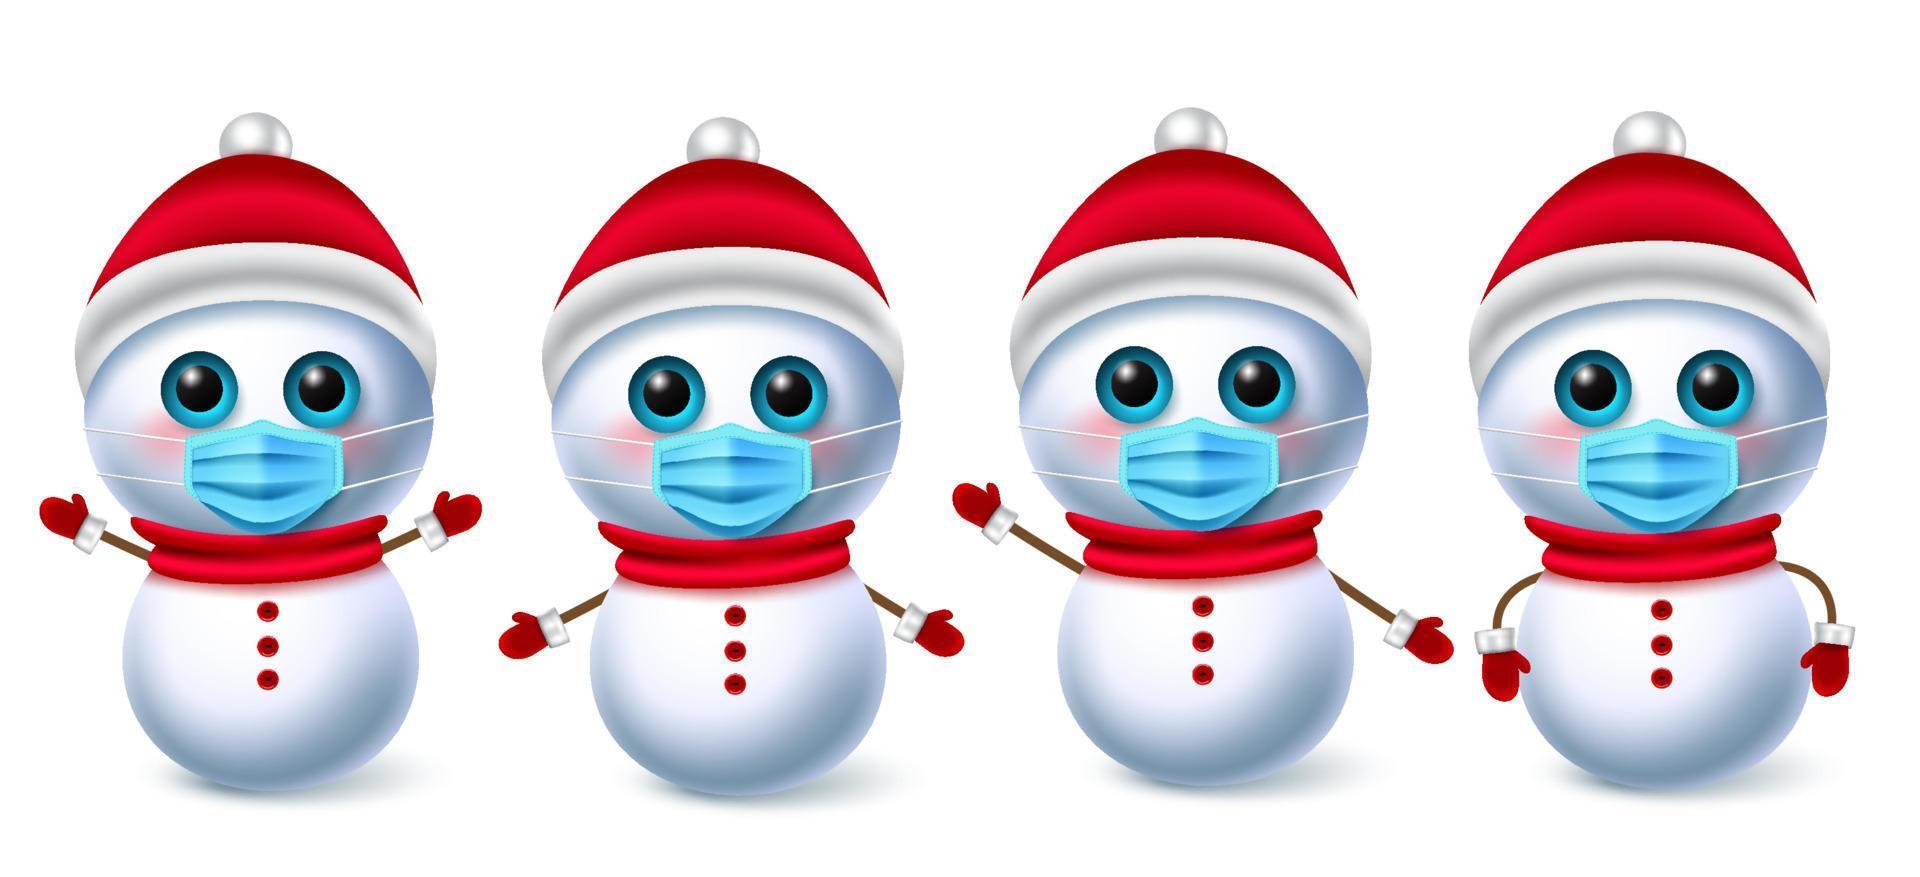 snö man jul karaktär vektoruppsättning. karaktärer för snögubbesamling som bär ansiktsmask för covid-19-kampanjen för ny design av normala julelement. vektor illustration.